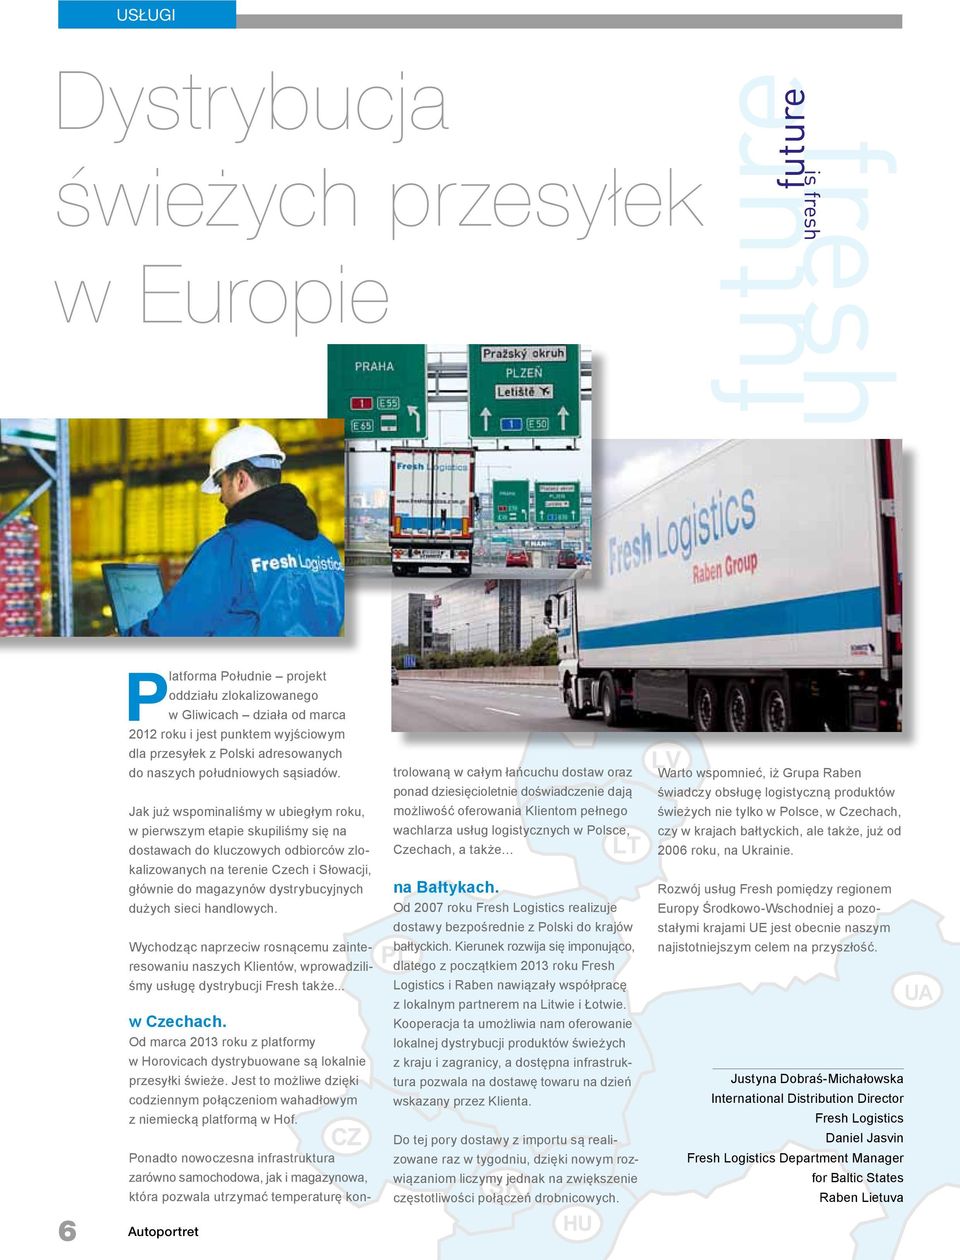 Jak już wspominaliśmy w ubiegłym roku, w pierwszym etapie skupiliśmy się na dostawach do kluczowych odbiorców zlokalizowanych na terenie Czech i Słowacji, głównie do magazynów dystrybucyjnych dużych